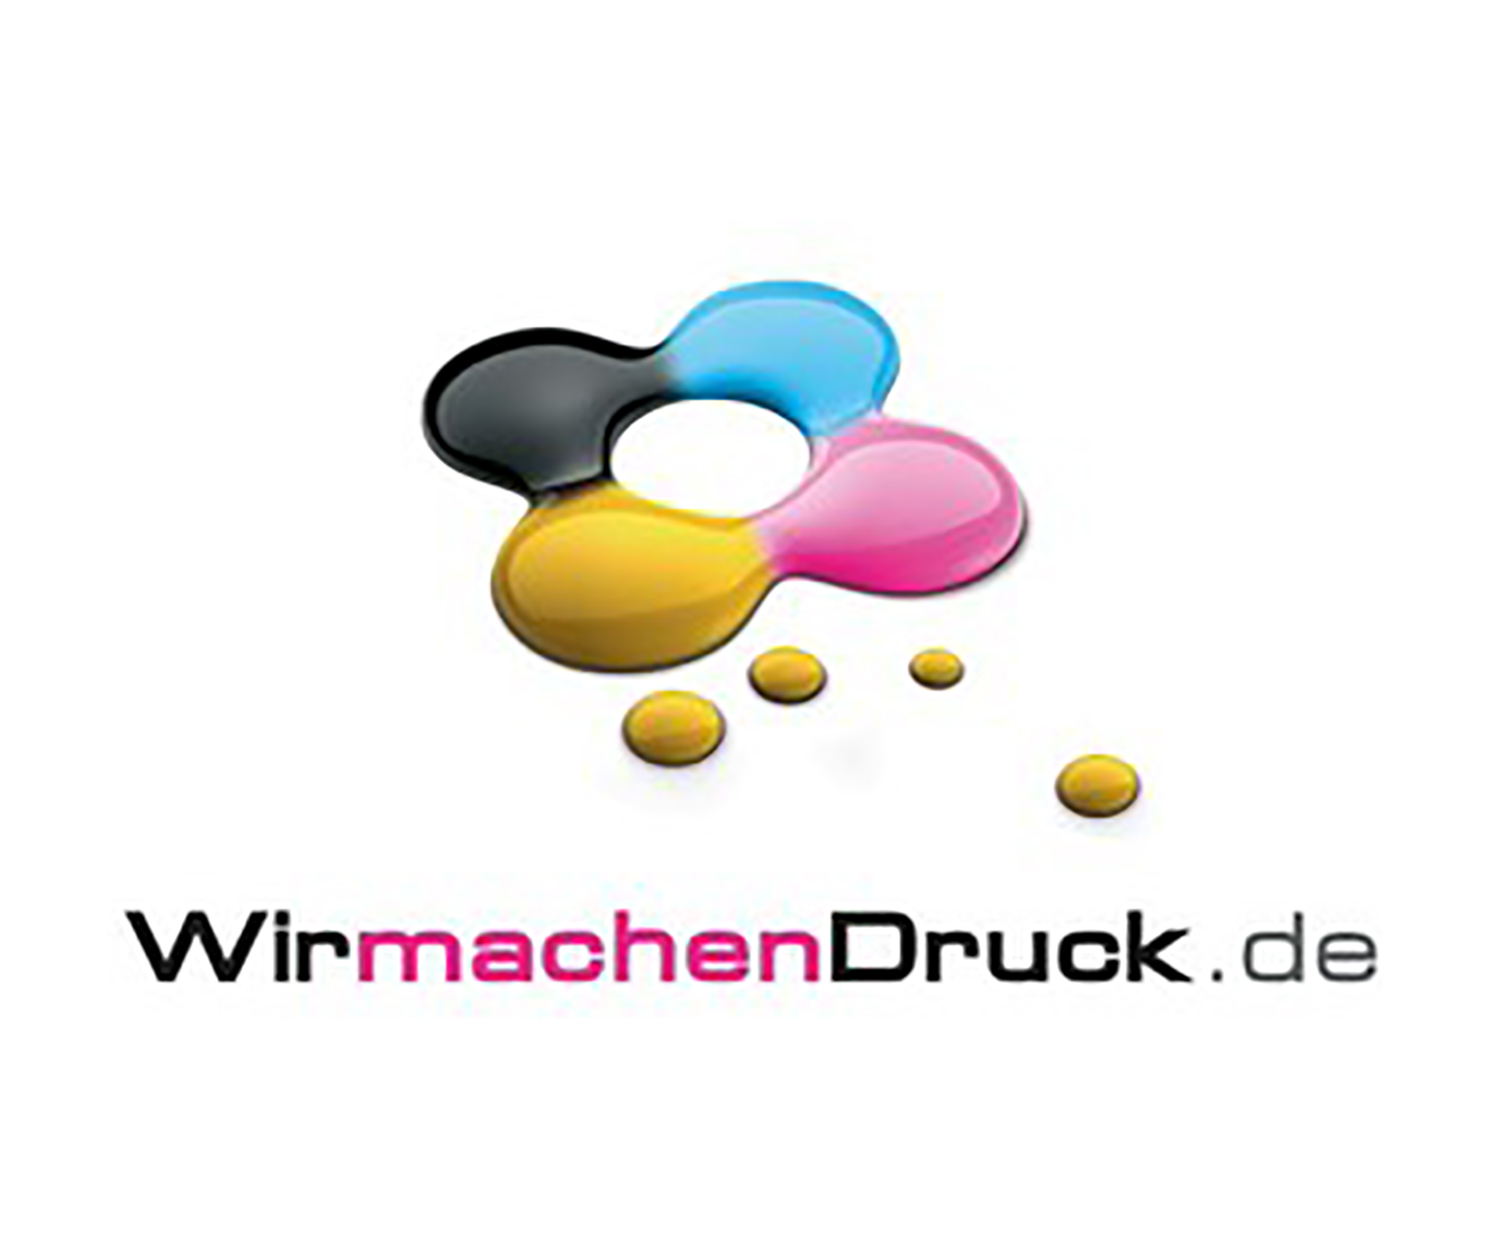 Logo-WirmachenDruck.